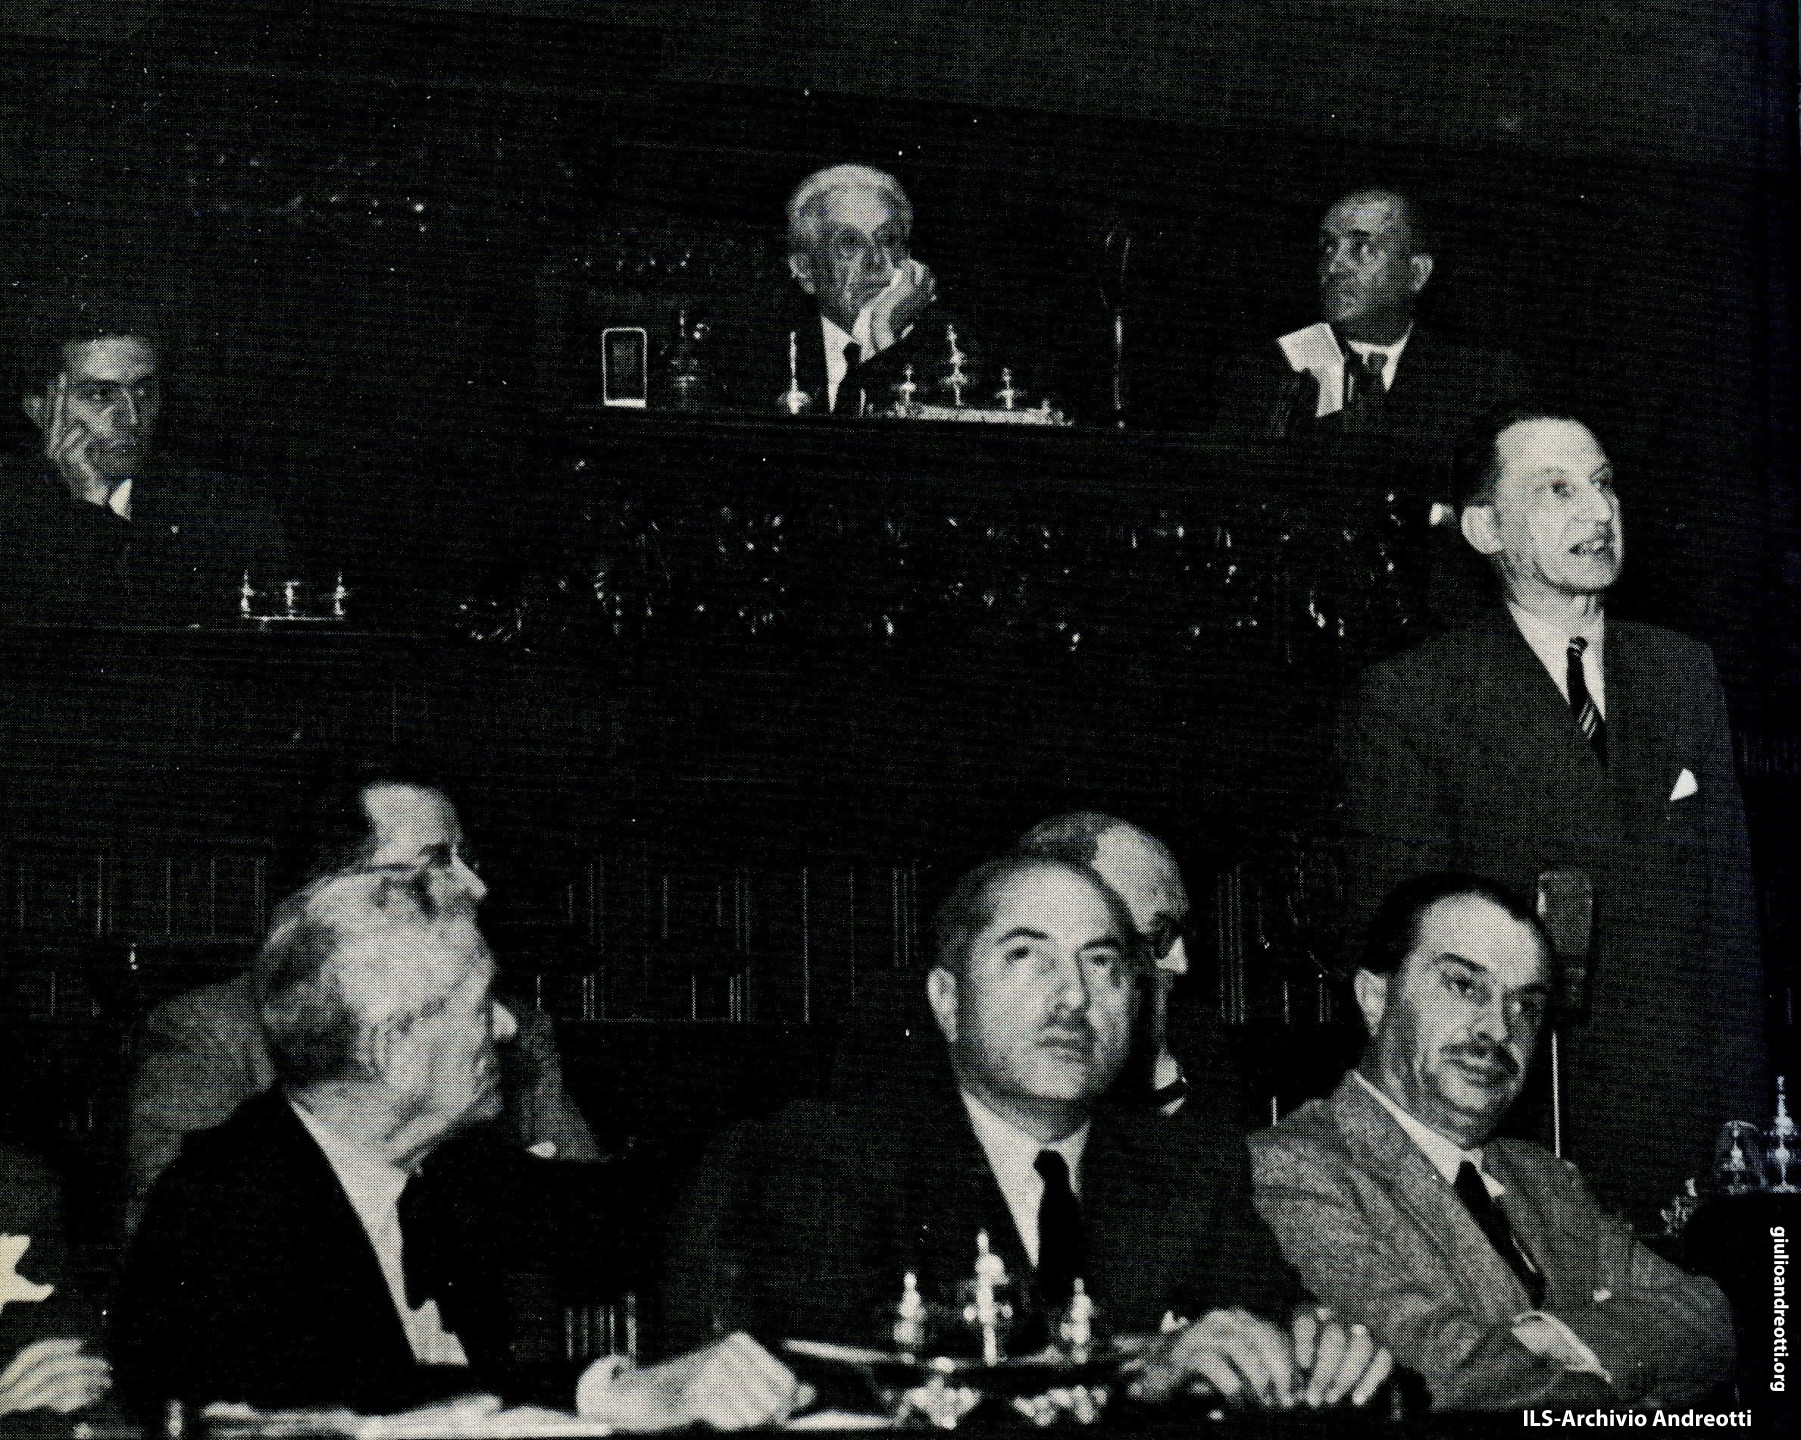 25 giugno 1946. Andreotti al banco di segretario durante la seduta inaugurale dell'Assemblea Costituente mentre parla De Gasperi. Alla presidenza, Vittorio Emanuele Orlando.